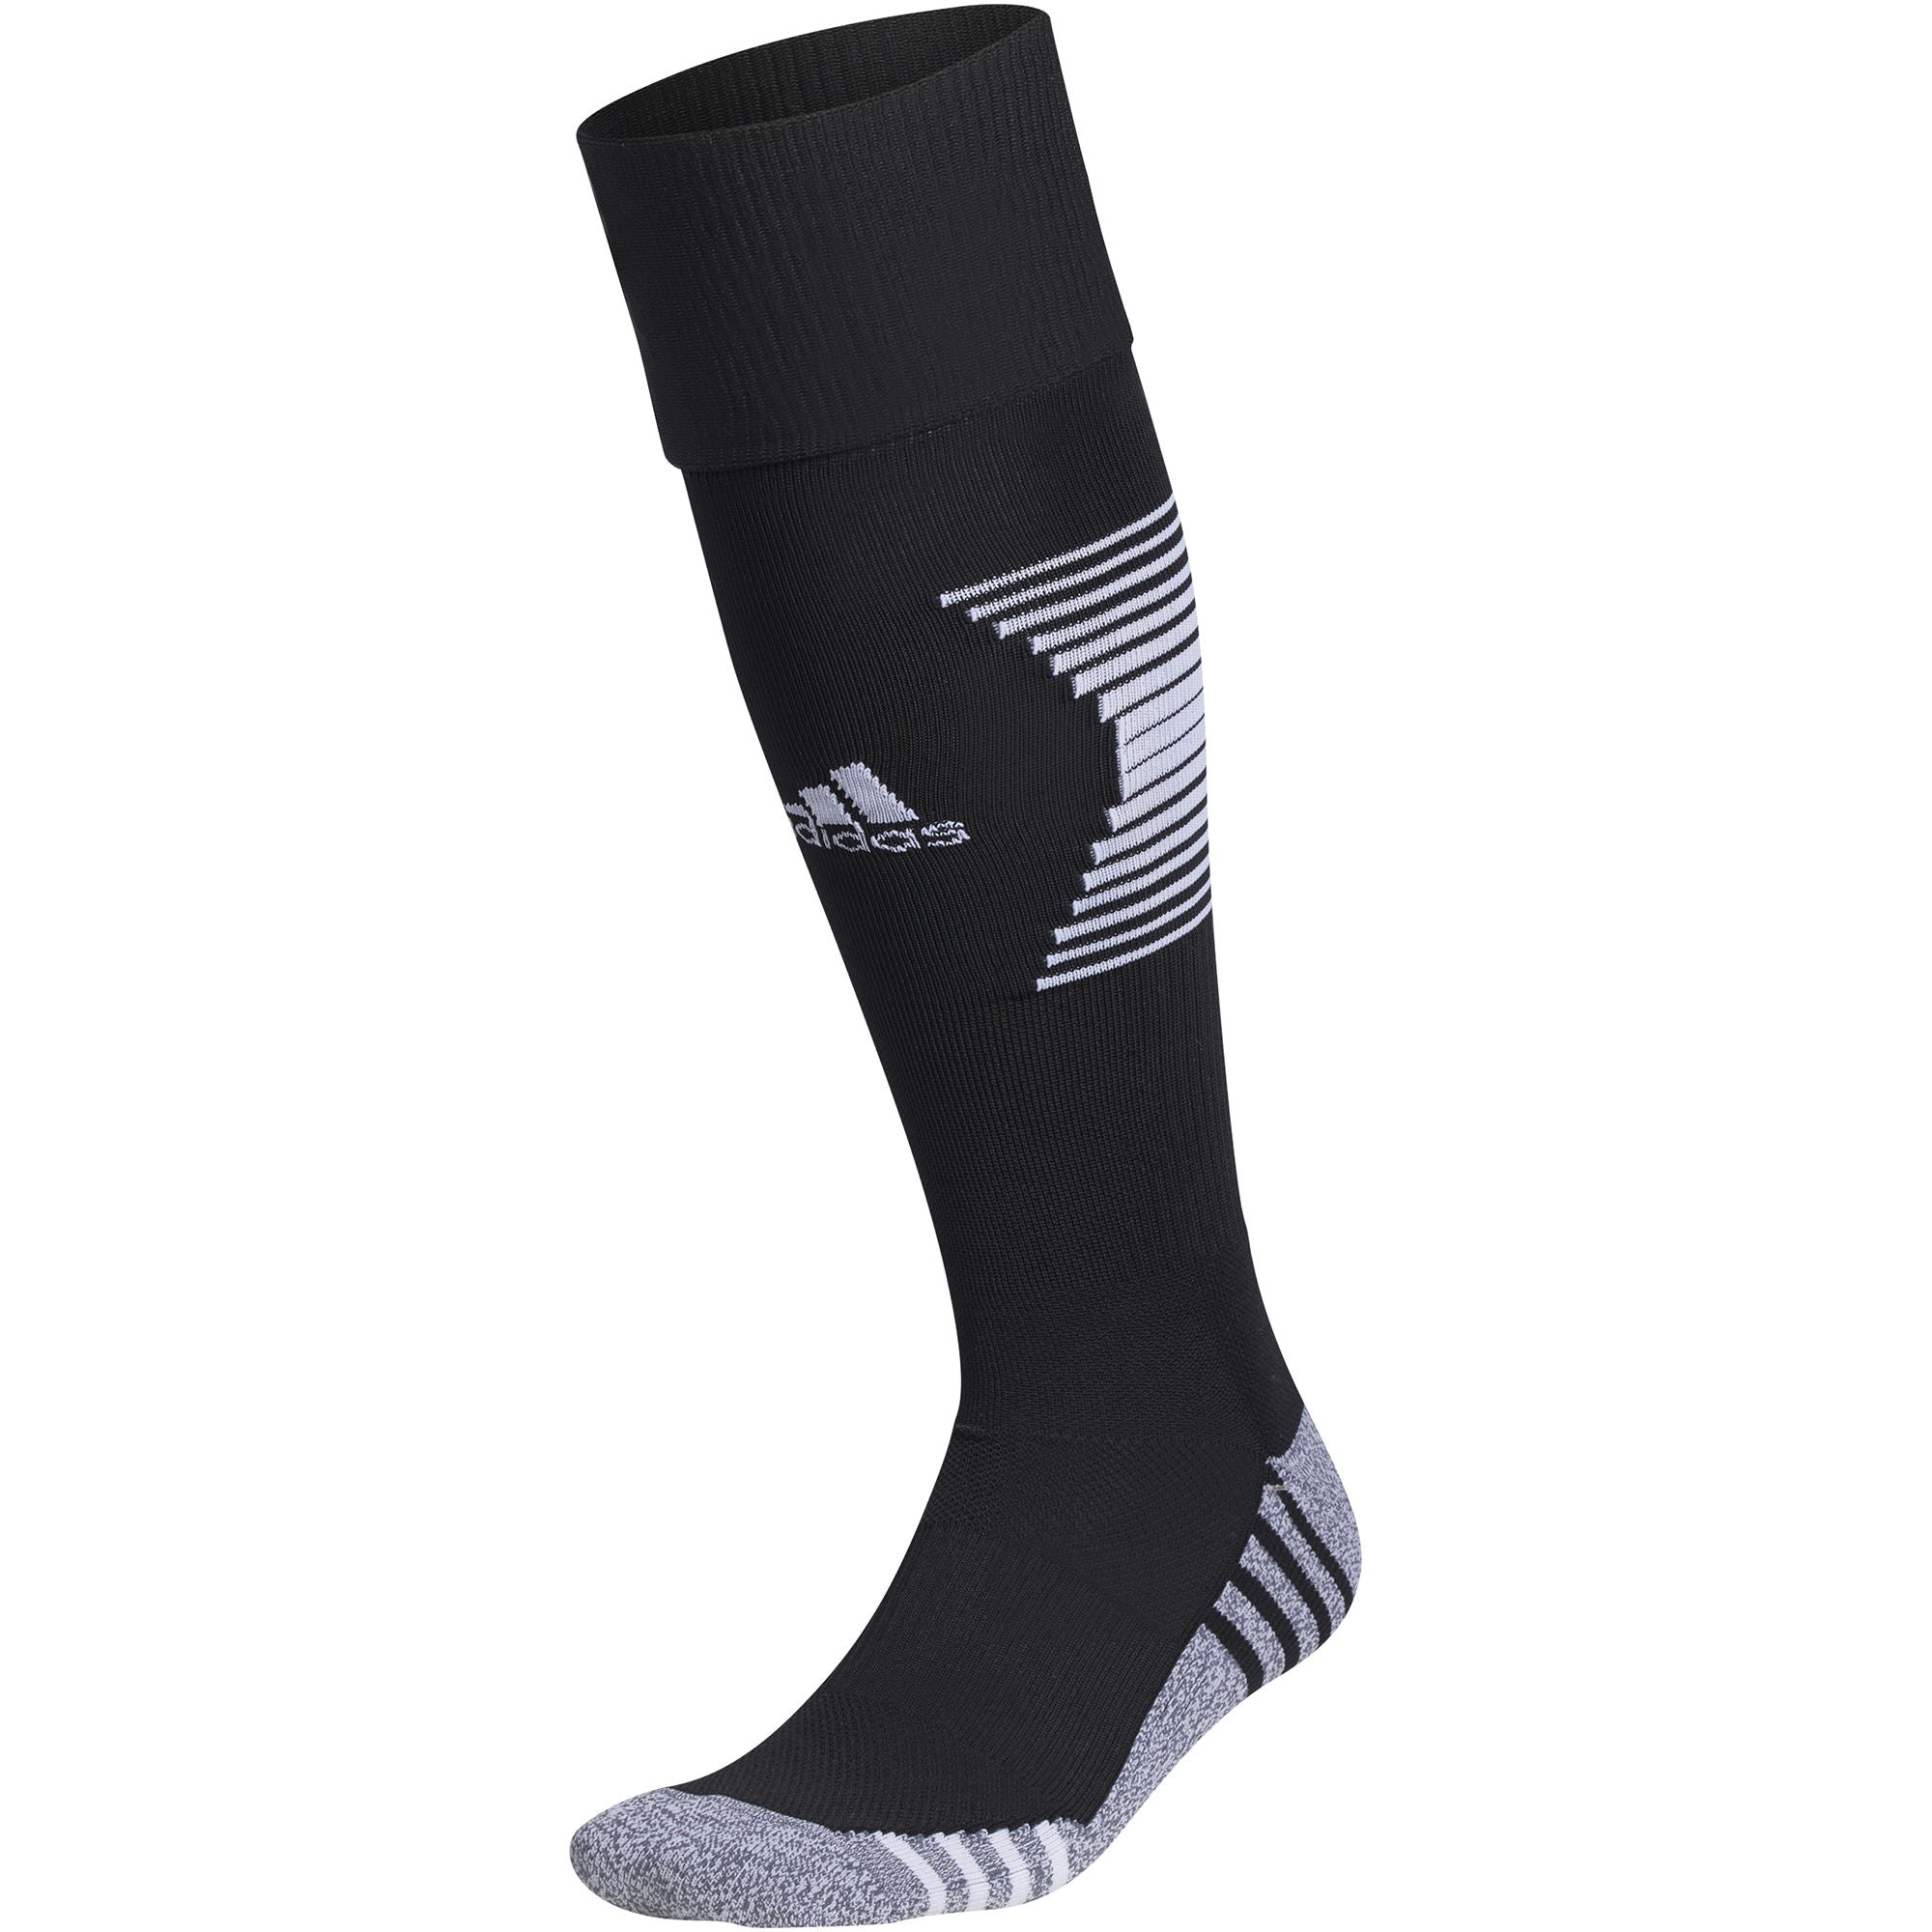 Adidas Team Speed 3 Soccer OTC Socks-Black/White